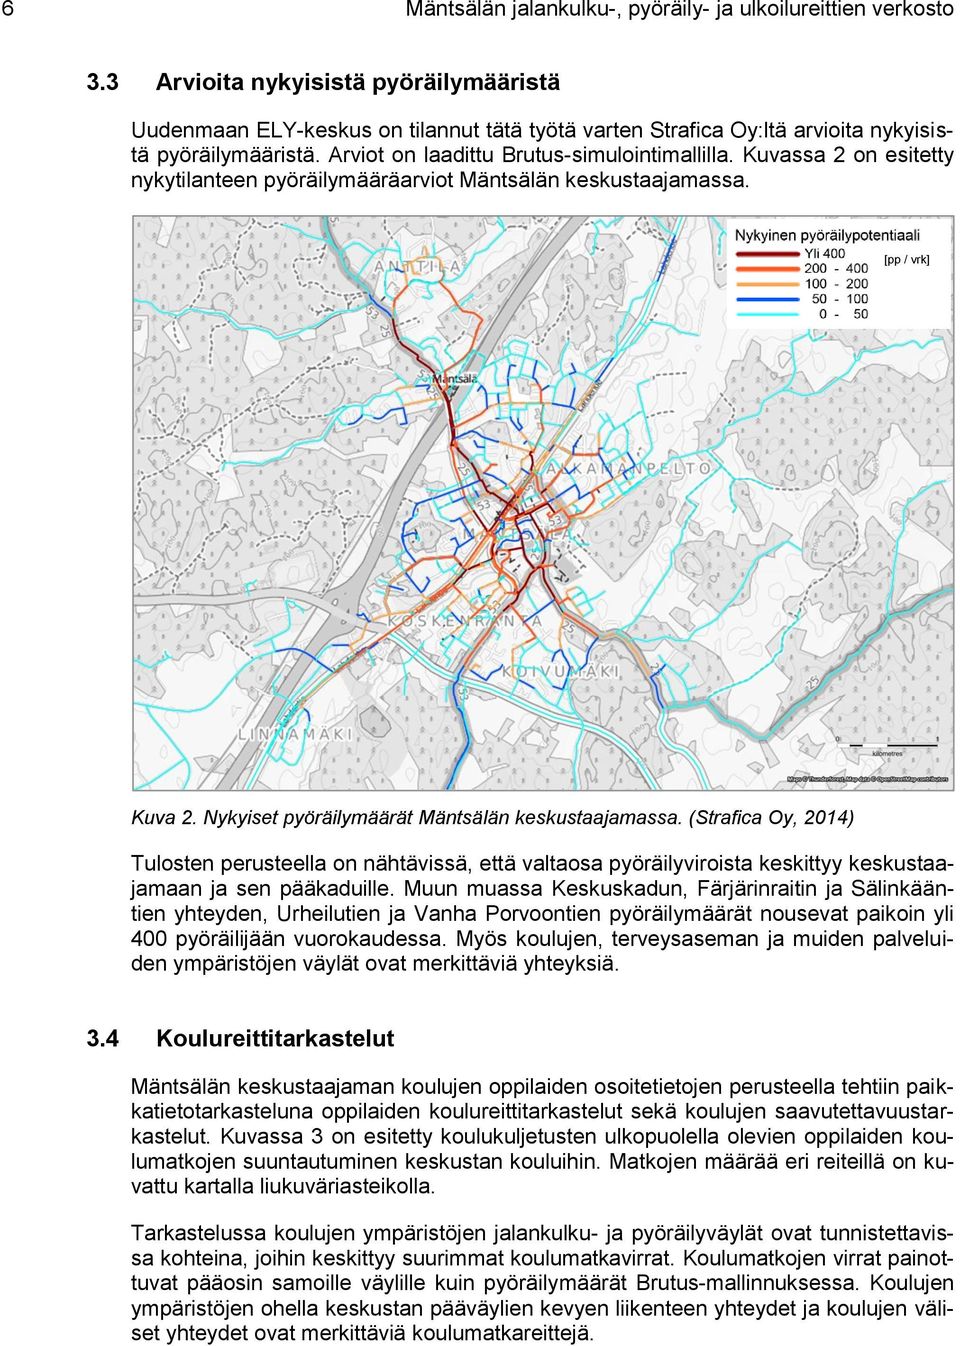 Kuvassa 2 on esitetty nykytilanteen pyöräilymääräarviot Mäntsälän keskustaajamassa. [pp / vrk] Kuva 2. Nykyiset pyöräilymäärät Mäntsälän keskustaajamassa.